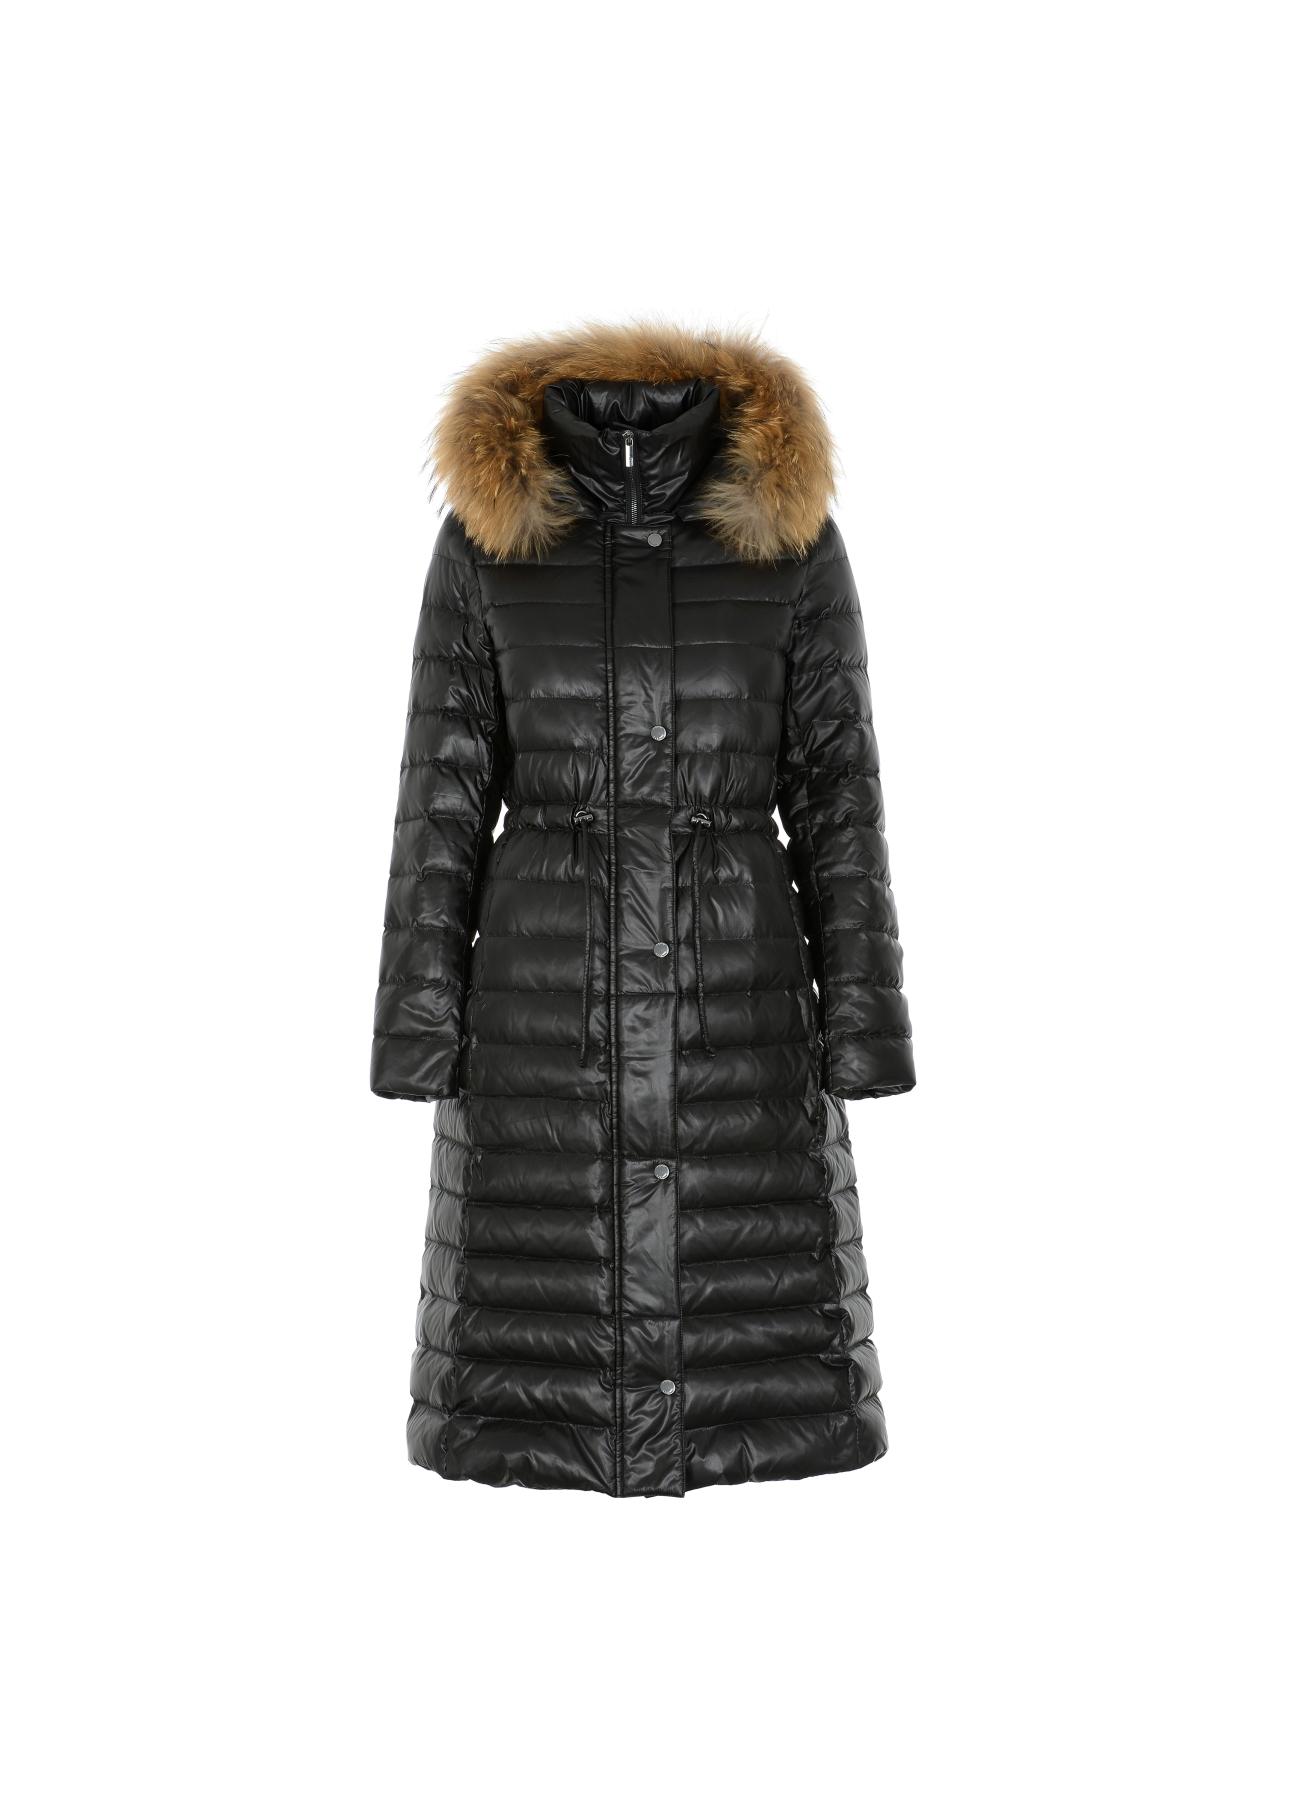 Ciepła kurtka damska w kolorze czarnym KURDT-0253-99(Z21)